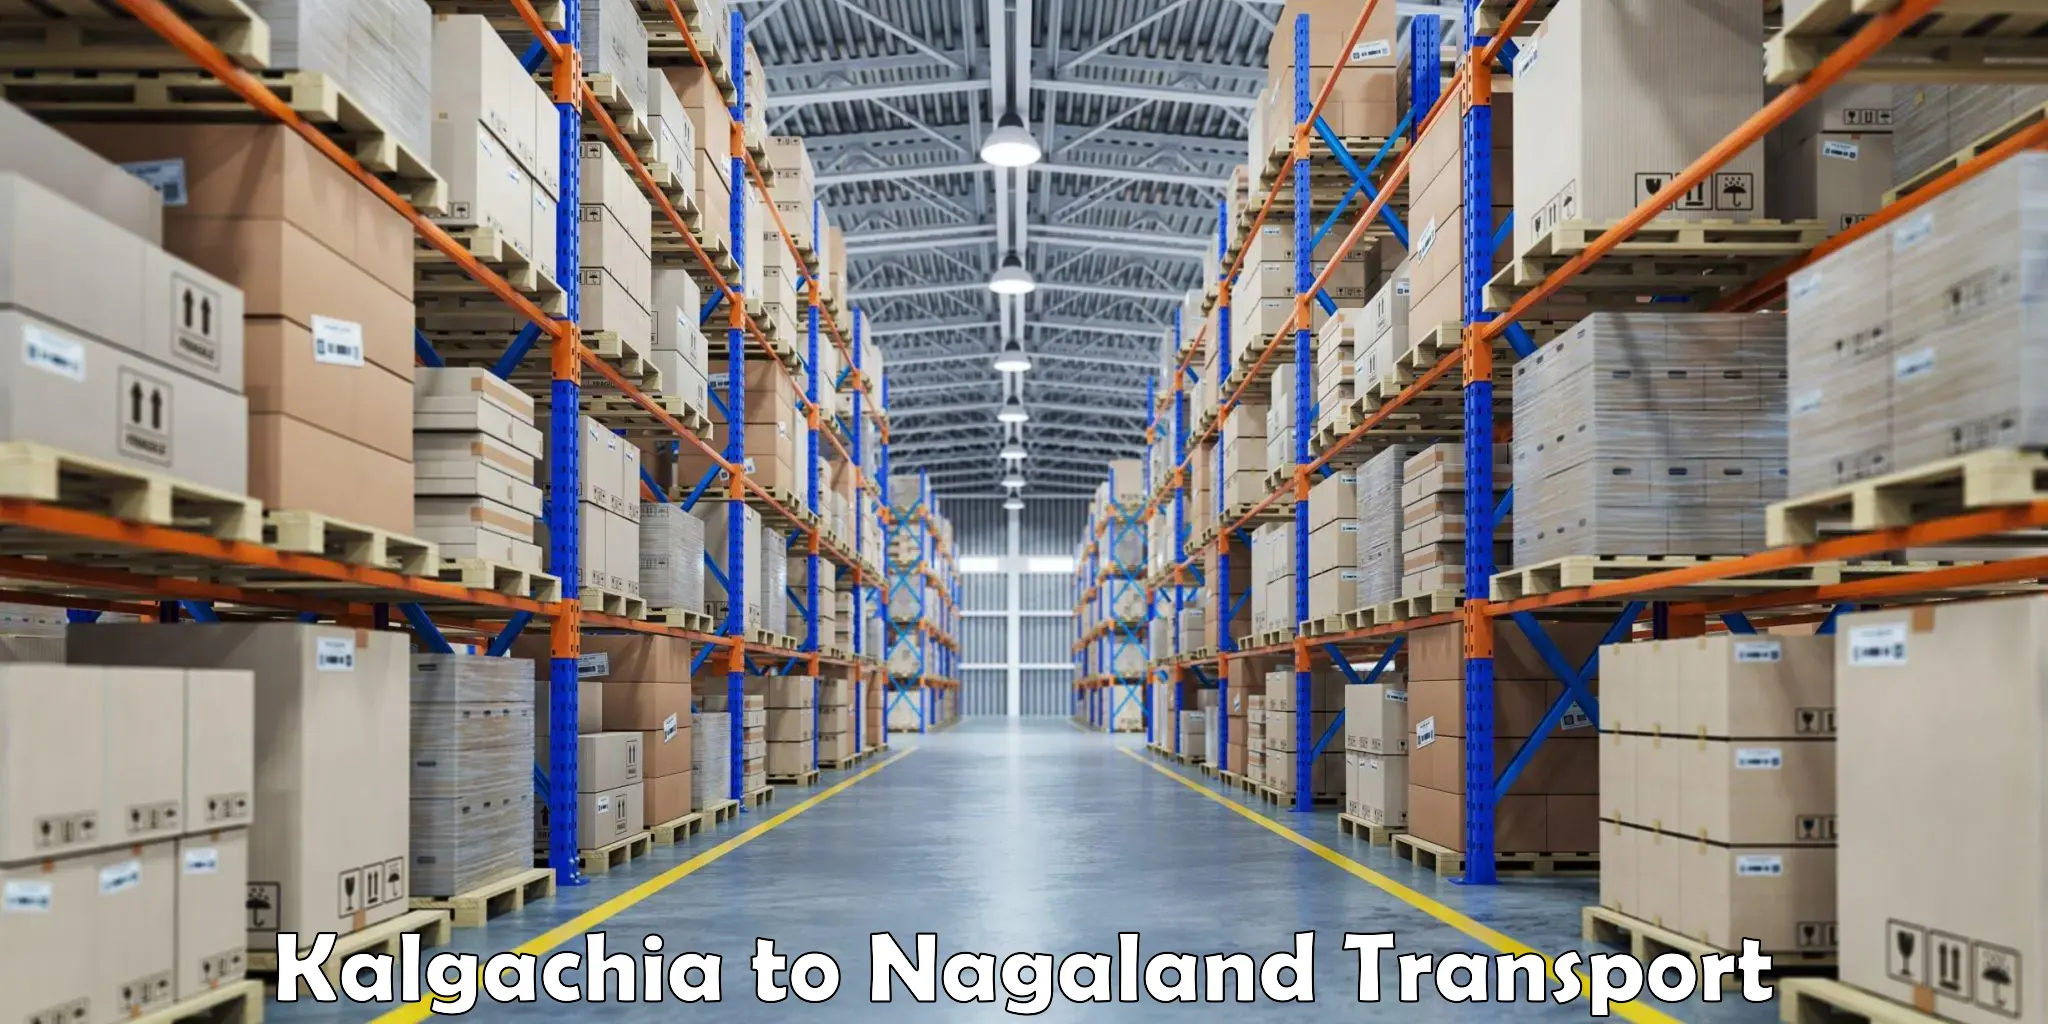 Container transportation services Kalgachia to NIT Nagaland